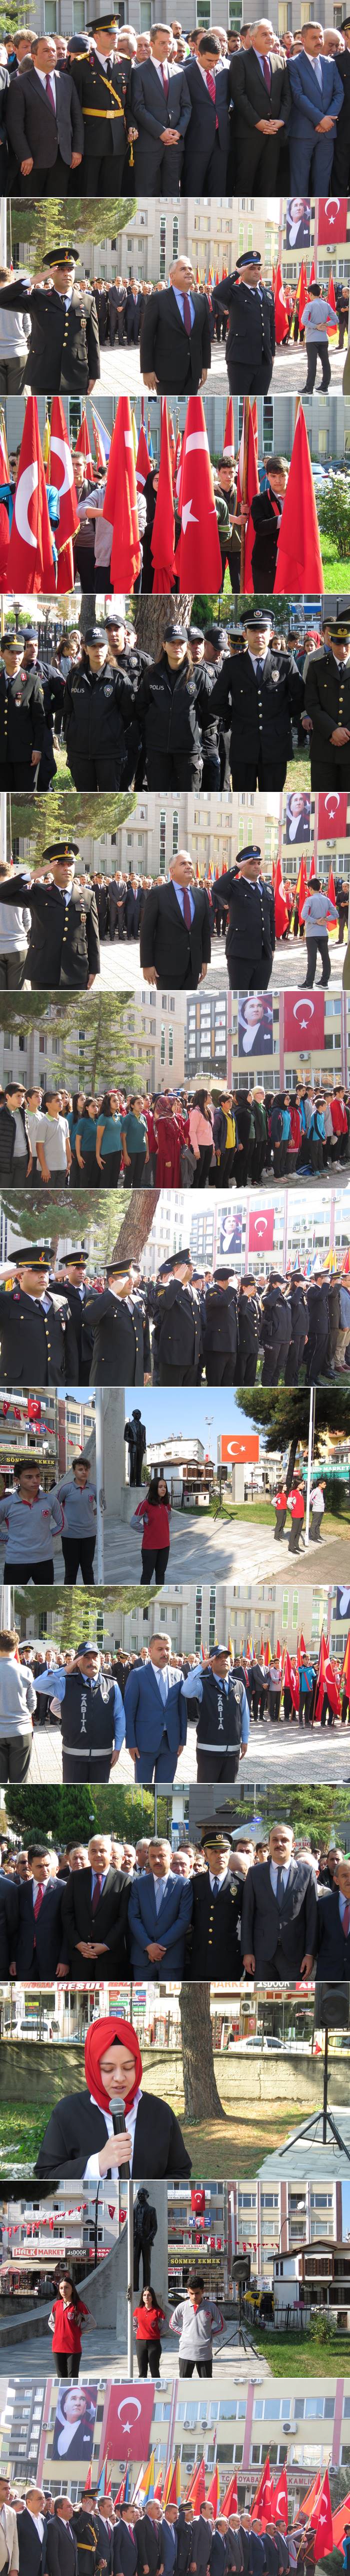 Boyabat’ta Cumhuriyet Bayramının 96. Yıl dönümü dolayısıyla Çelenk Sunma töreni düzenlendi.